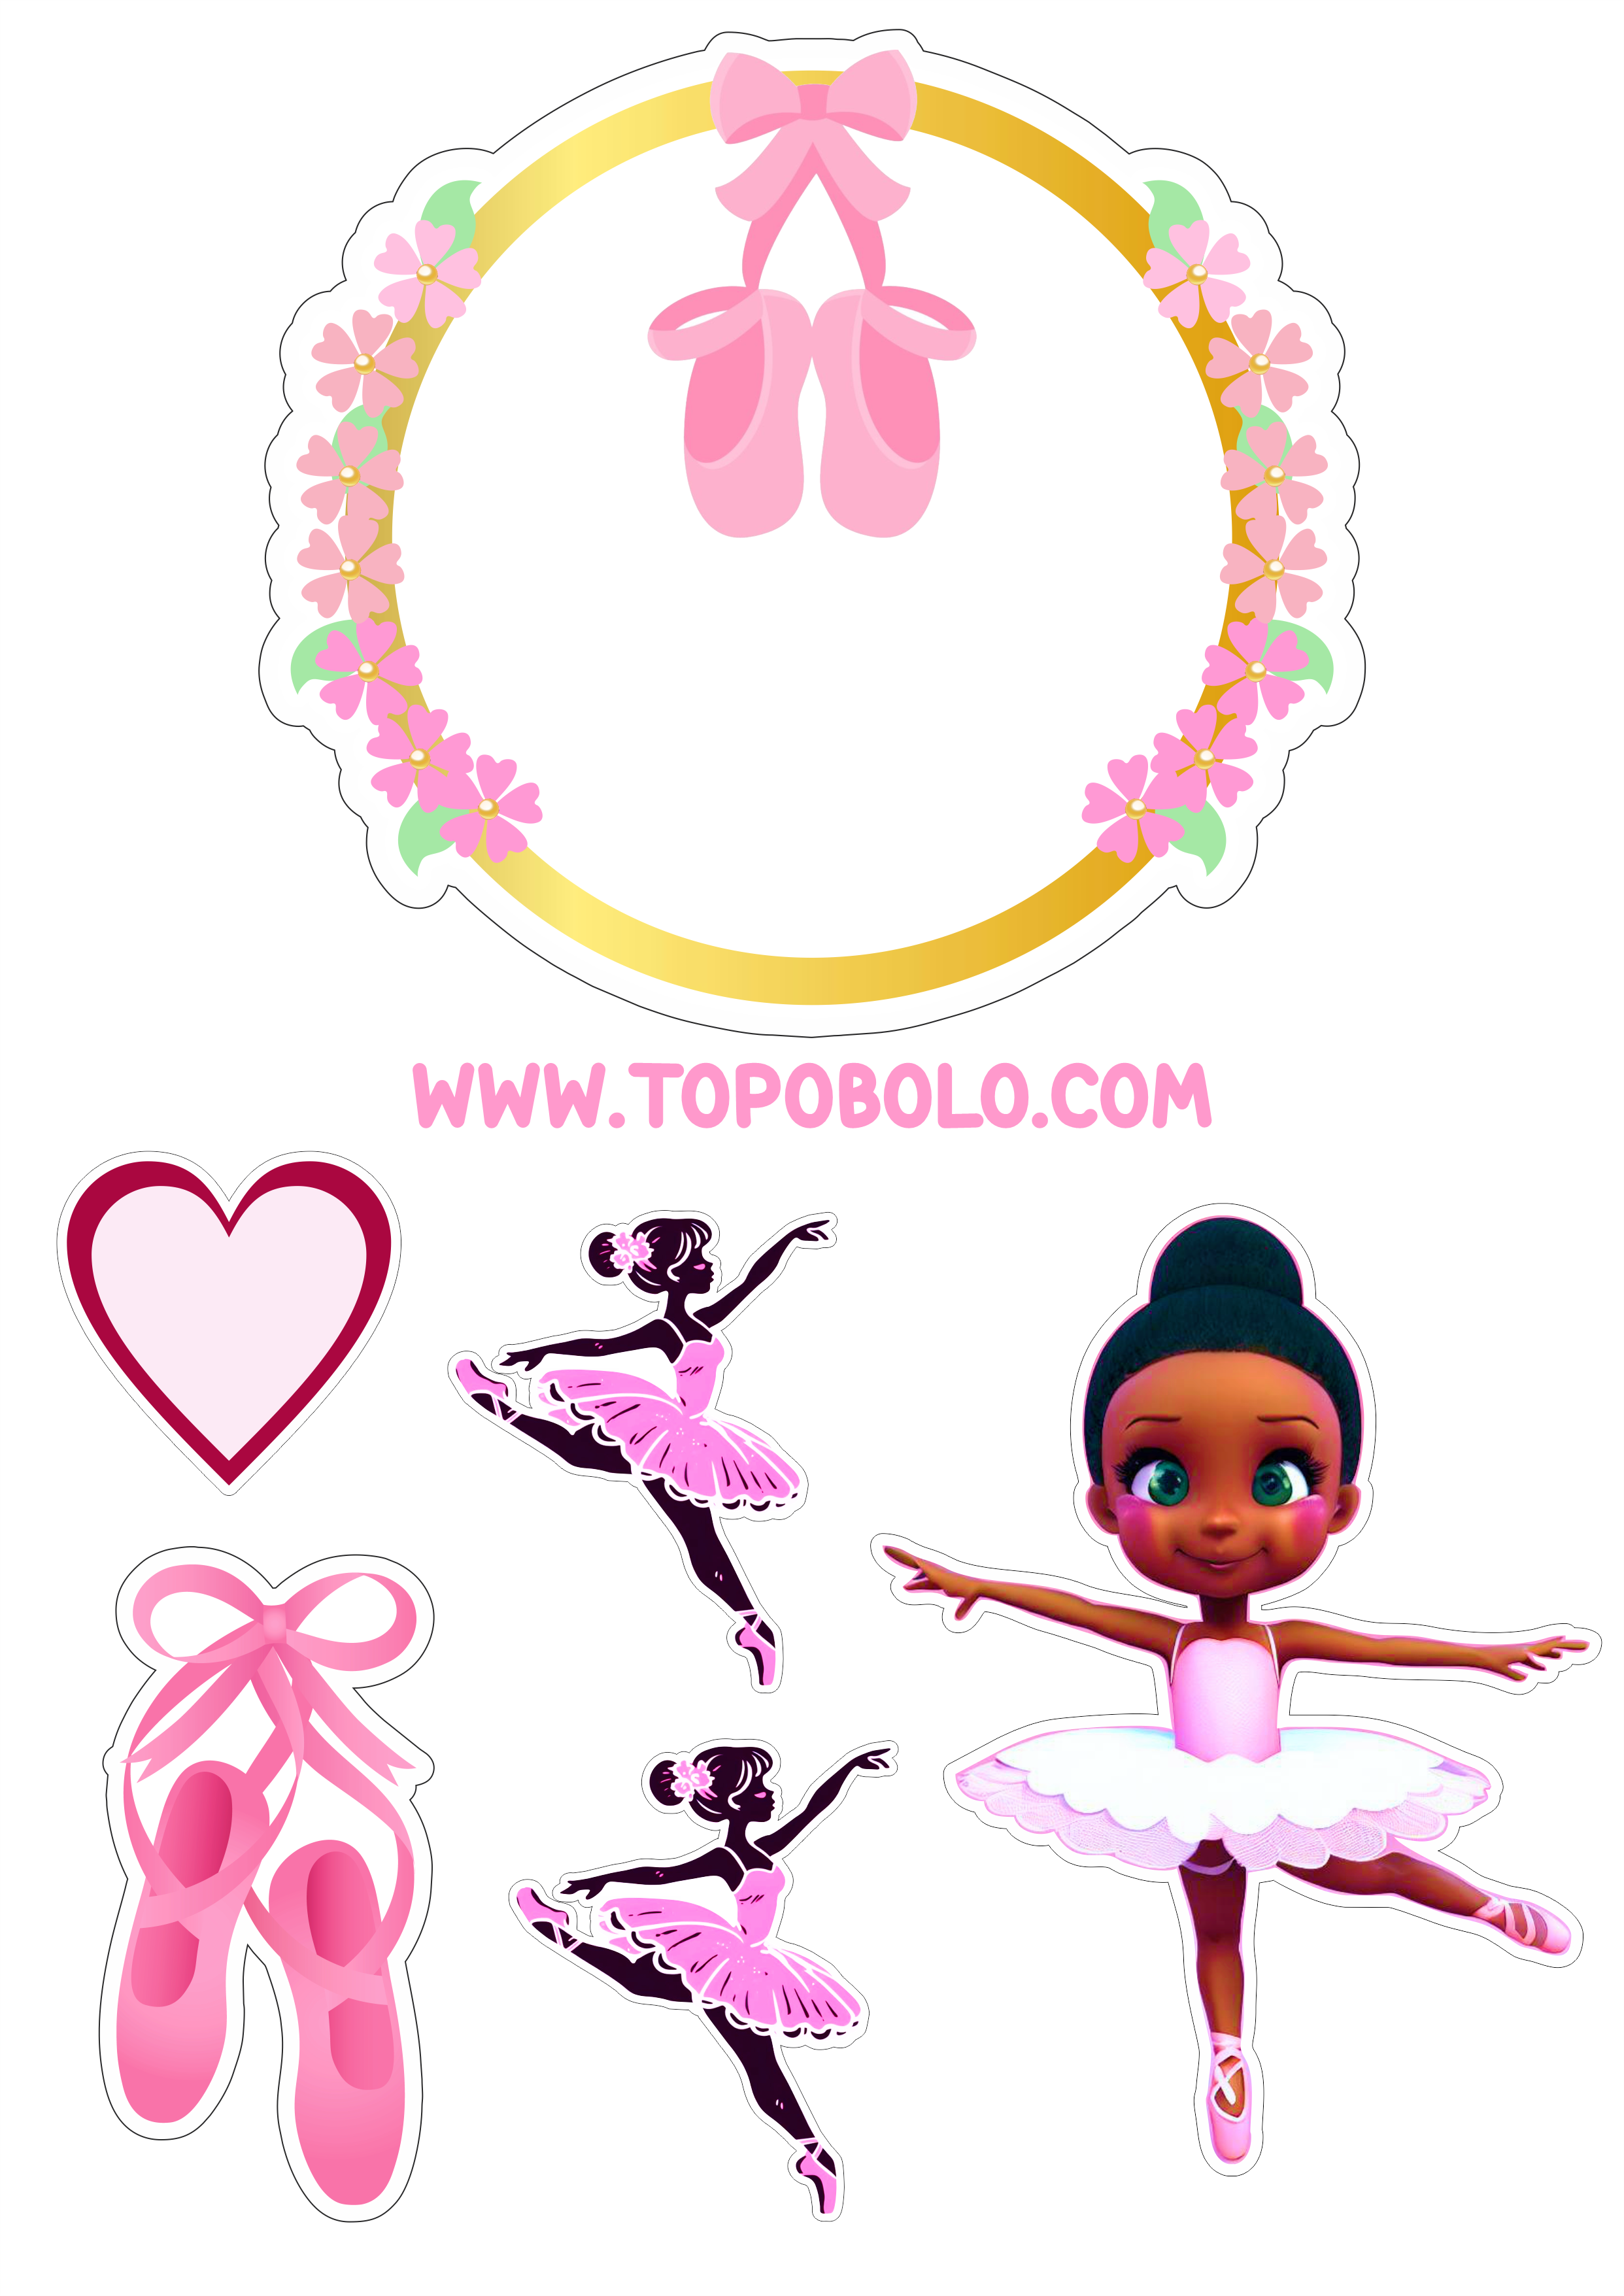 Bailarina topo de bolo aniversário menina rosa com corações boneca fofinha bolo personalizado png image papelaria